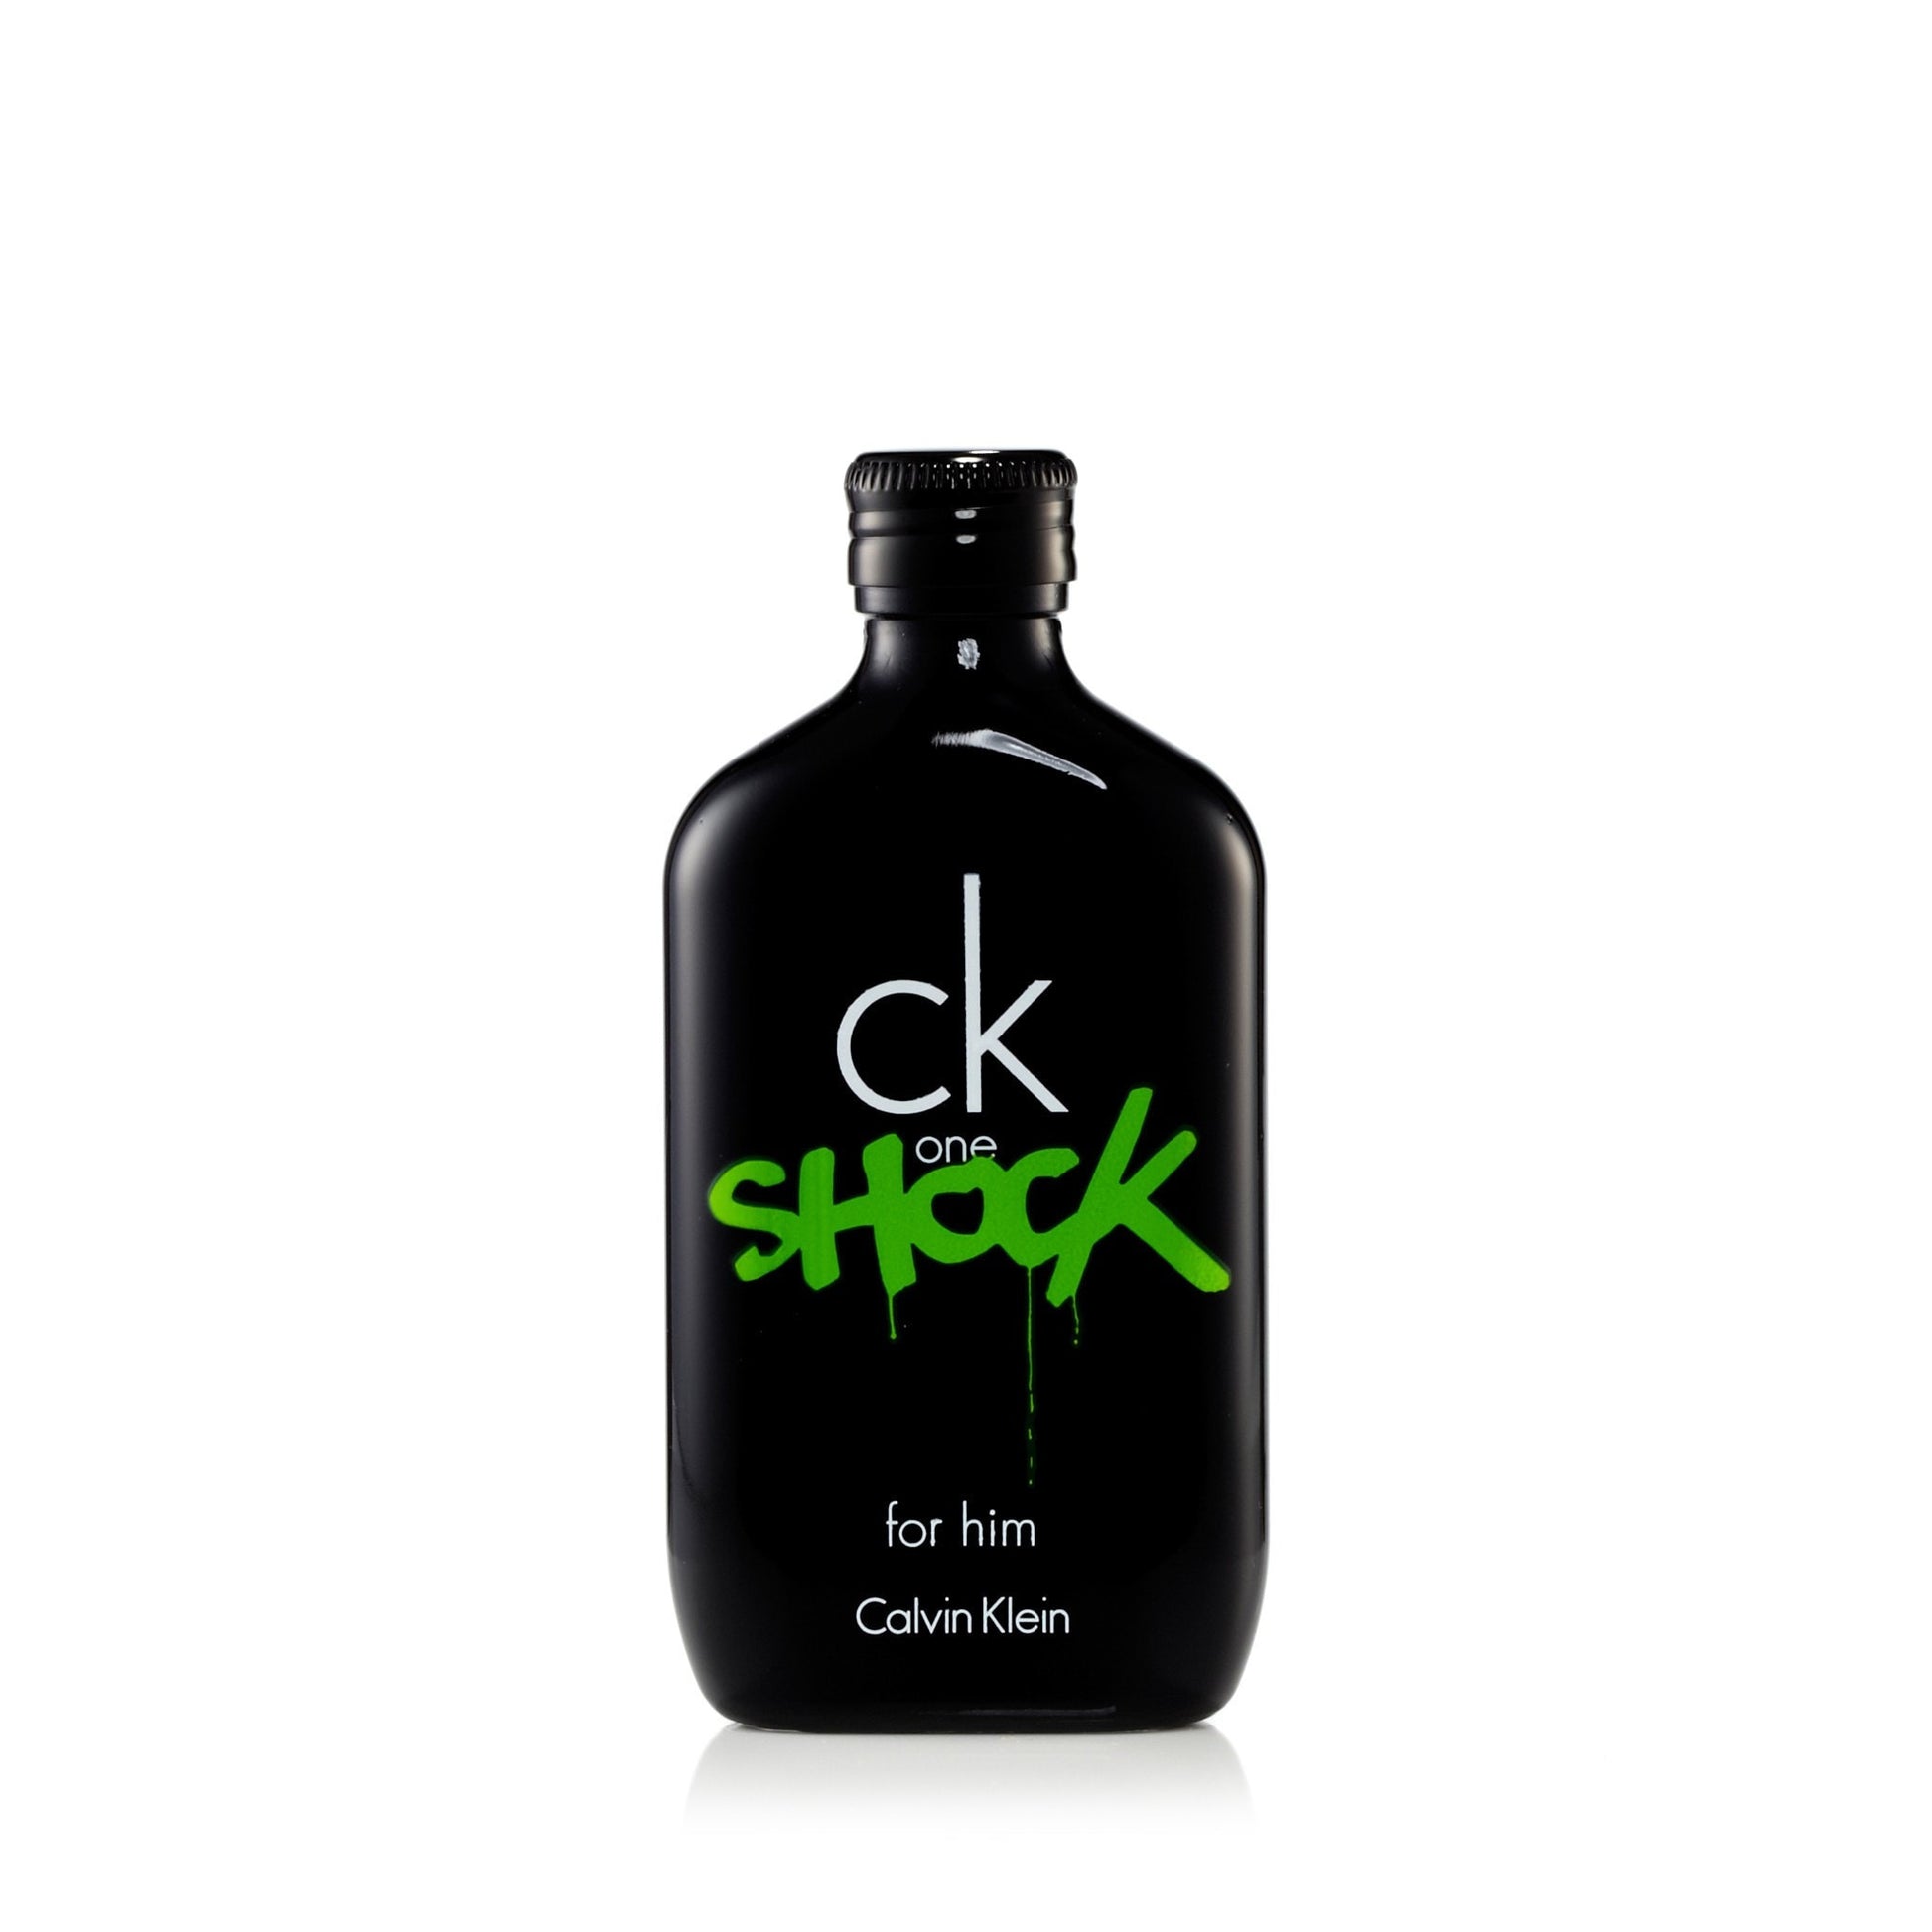 CK One Shock for Men by Calvin Klein Market